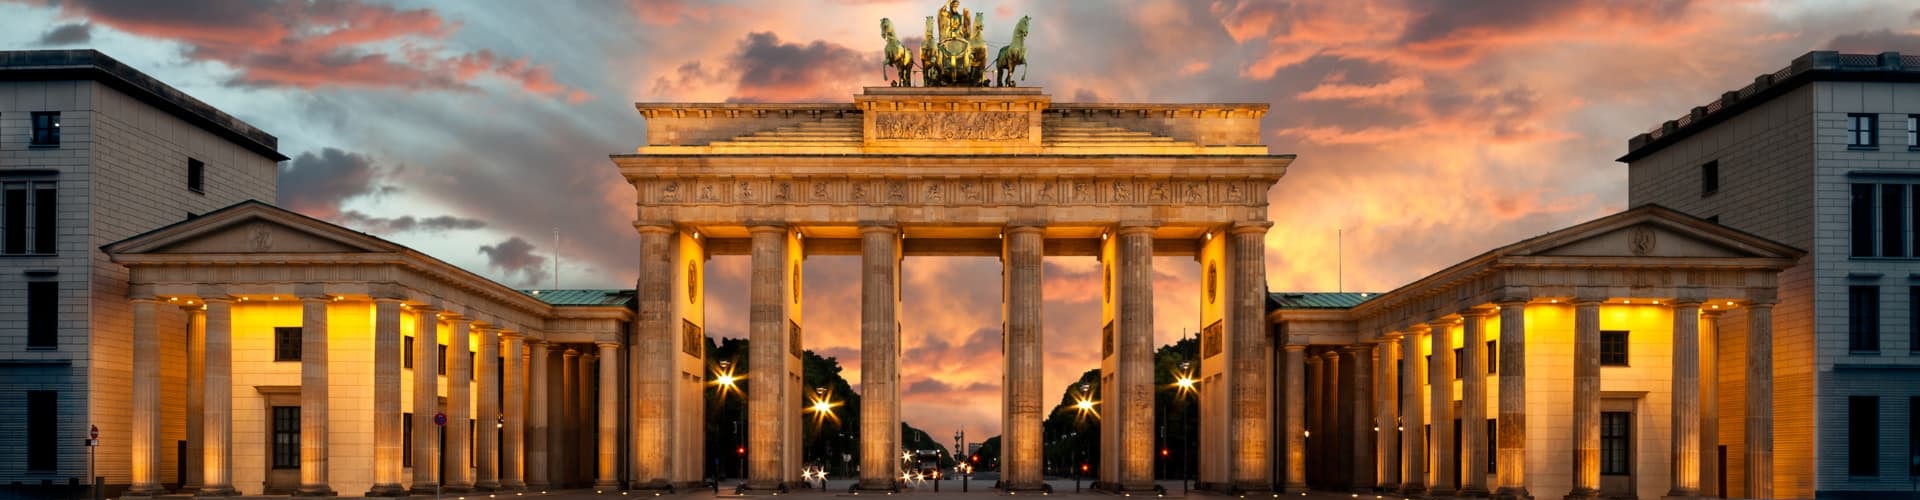 La Puerta de Brandeburgo: el símbolo de Berlín